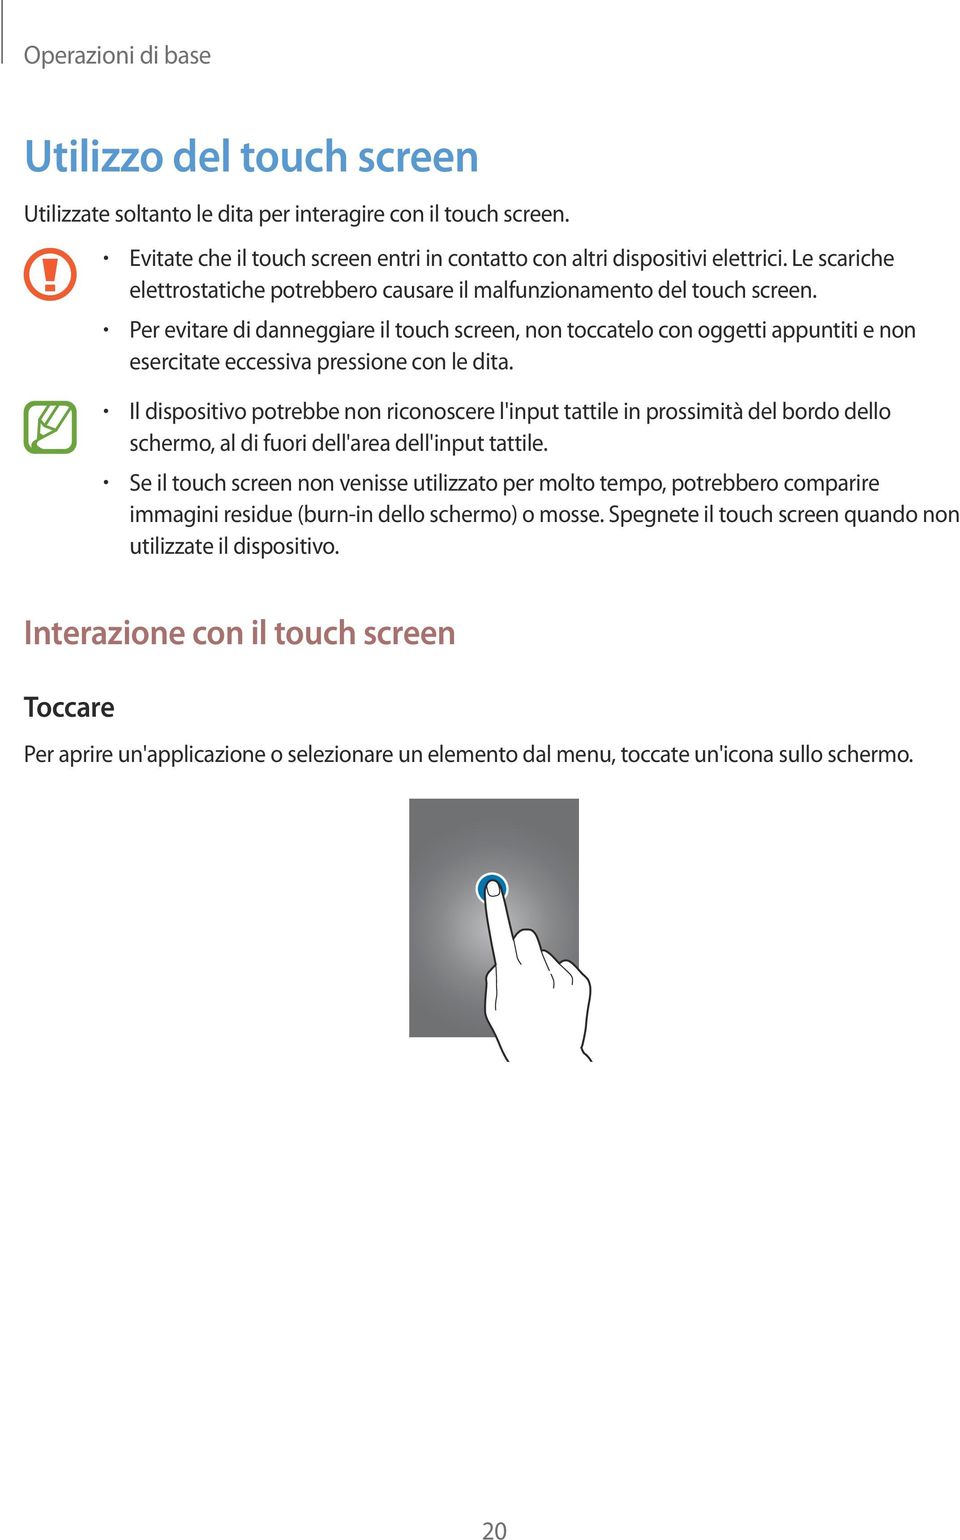 Per evitare di danneggiare il touch screen, non toccatelo con oggetti appuntiti e non esercitate eccessiva pressione con le dita.